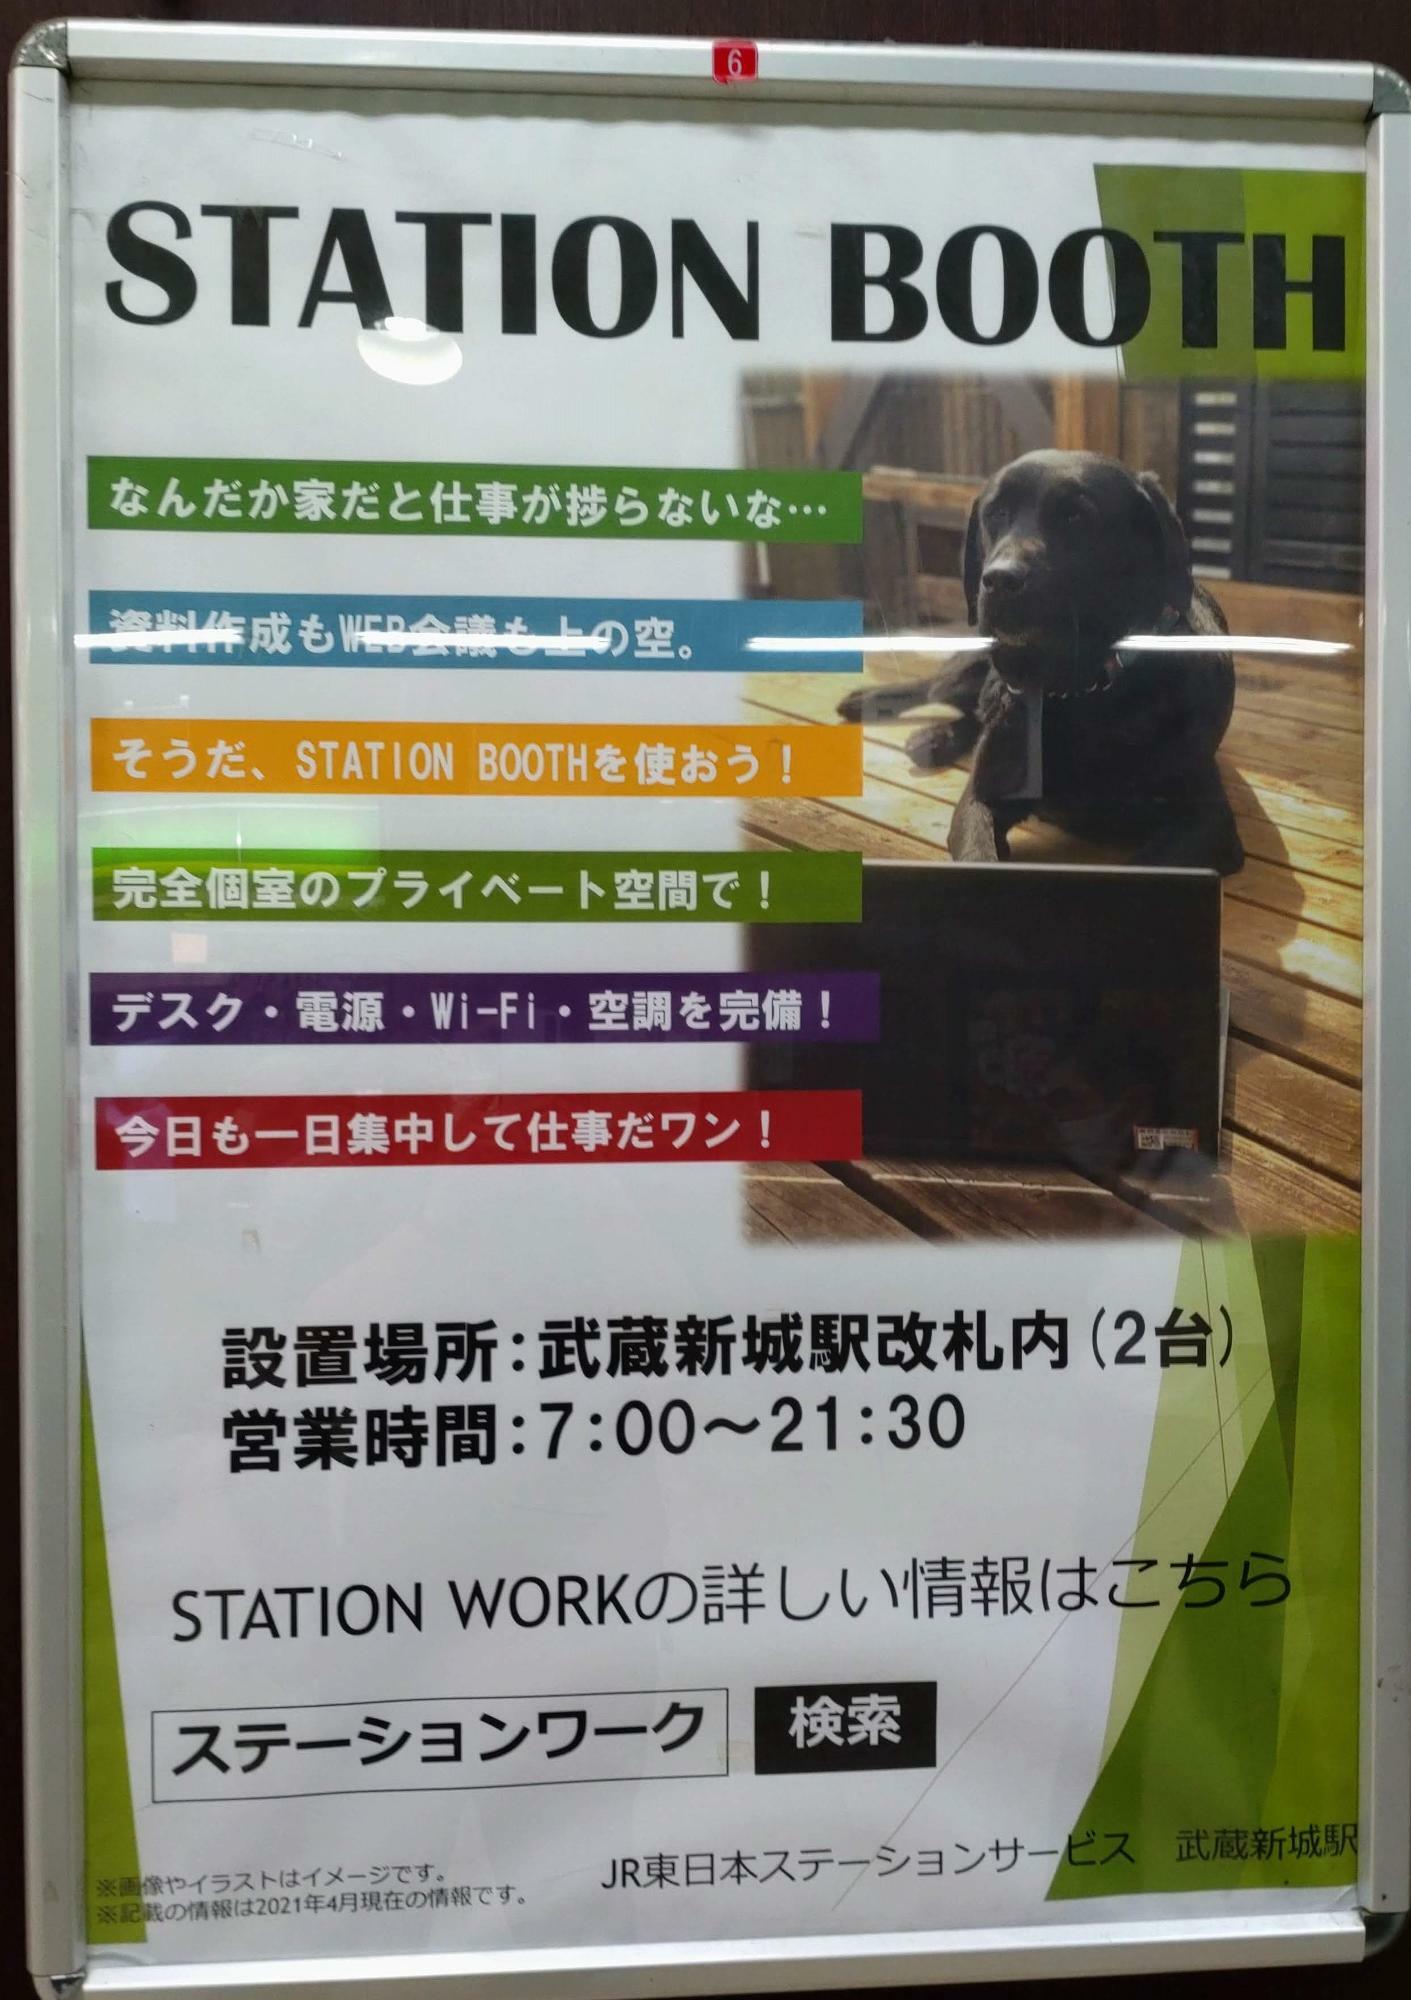 JR武蔵新城駅改札を降りたときにこのポスターを発見